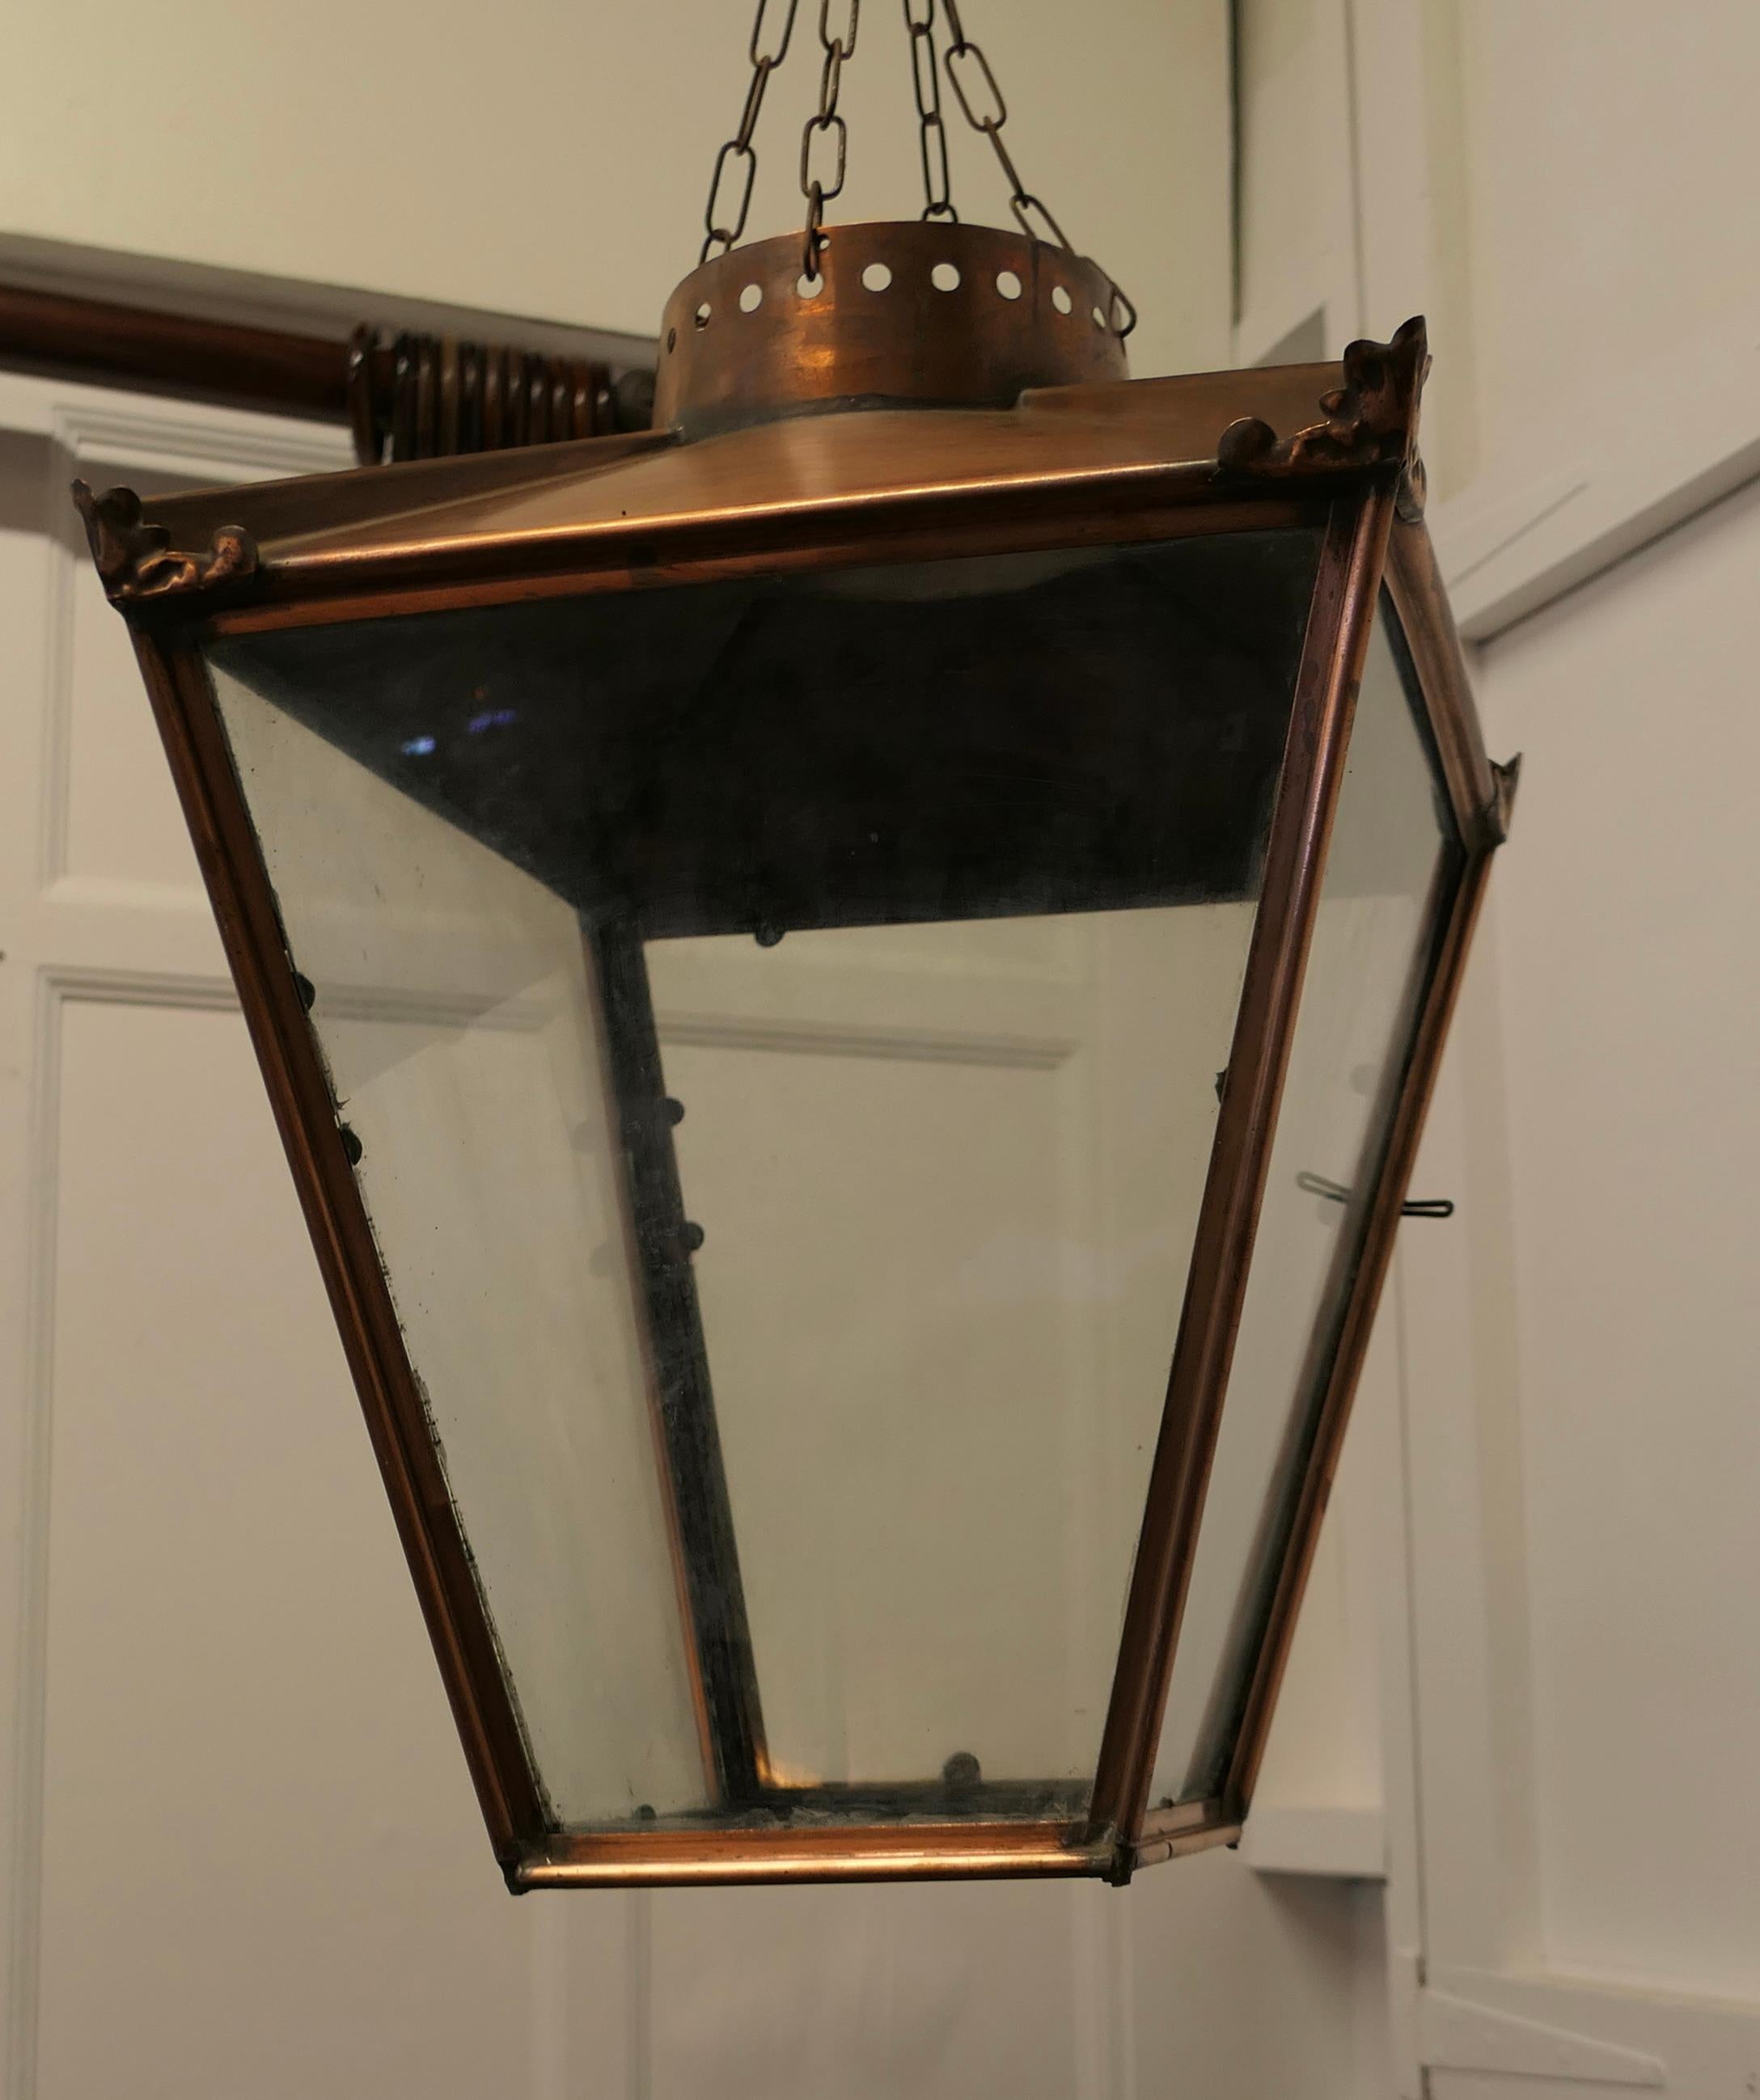 Abat-jour pour lanterne suspendue en cuivre

Il s'agit d'un abat-jour en forme de grand réverbère en cuivre, la lanterne a une patine naturelle oxydée, elle a des côtés et un fond vitrés et elle est suspendue à 4 chaînes par le haut.
Le travail du